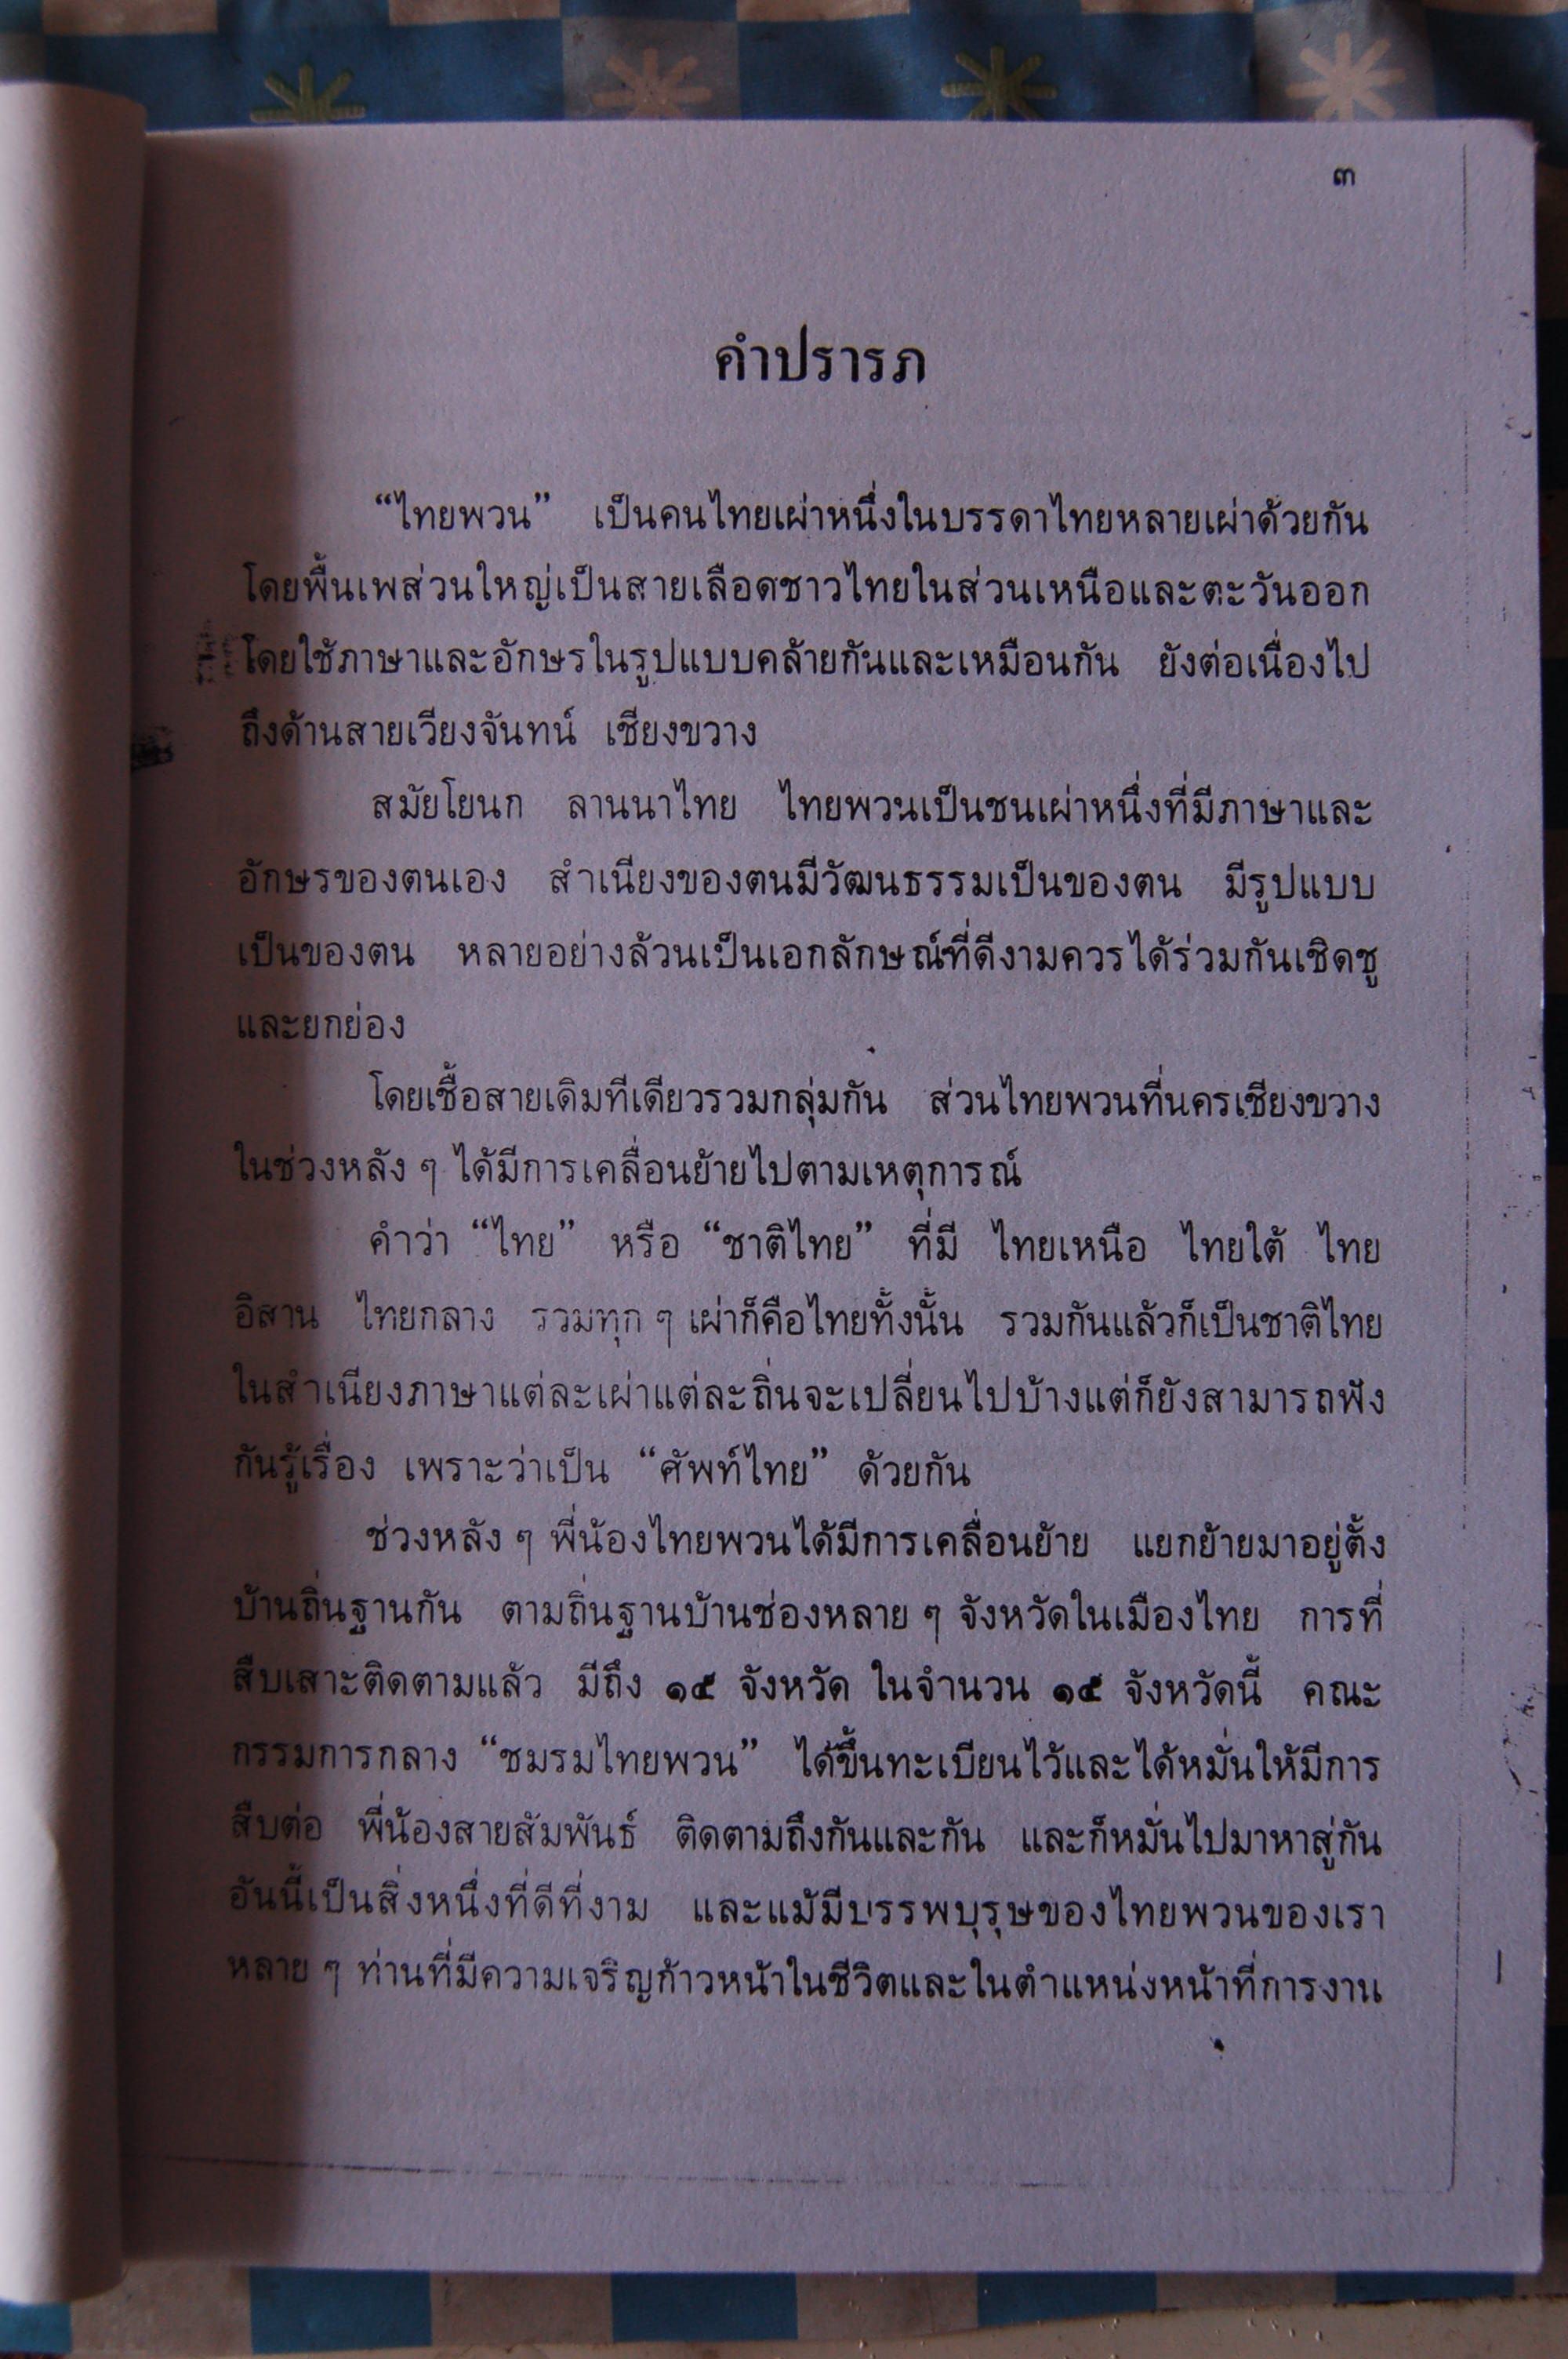 พจนานุกรมภาษาไทยพวน